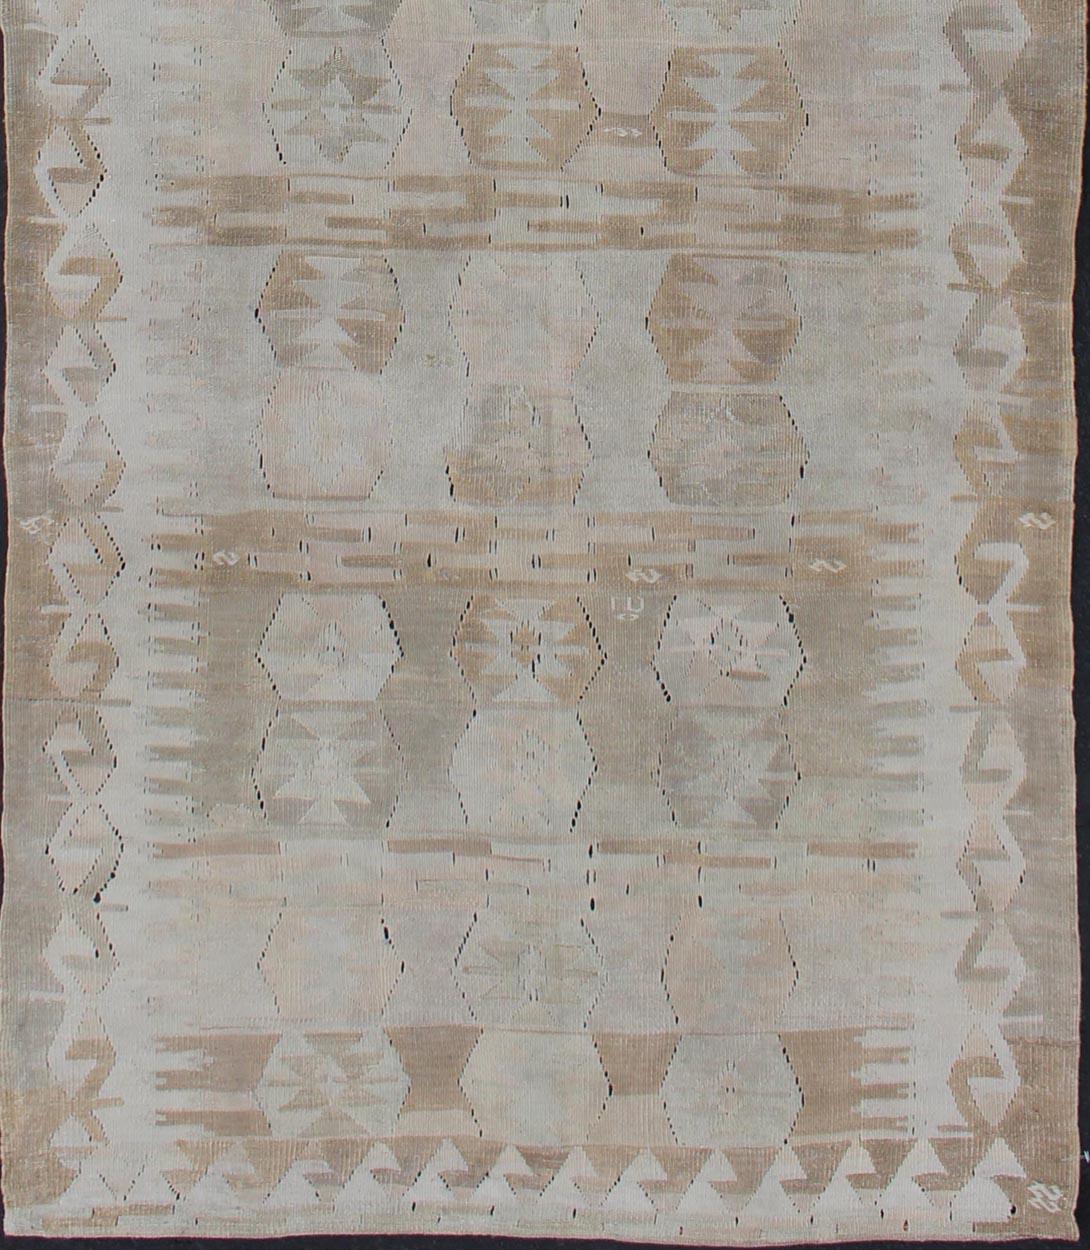 Tapis Kilim antique de Turquie aux couleurs neutres et sourdes, design géométrique, tissage plat, tapis en-359, pays d'origine / type : Turquie / Kilim, circa 1920

Doté d'un magnifique motif géométrique rendu dans des tons sourds, ce chemin de